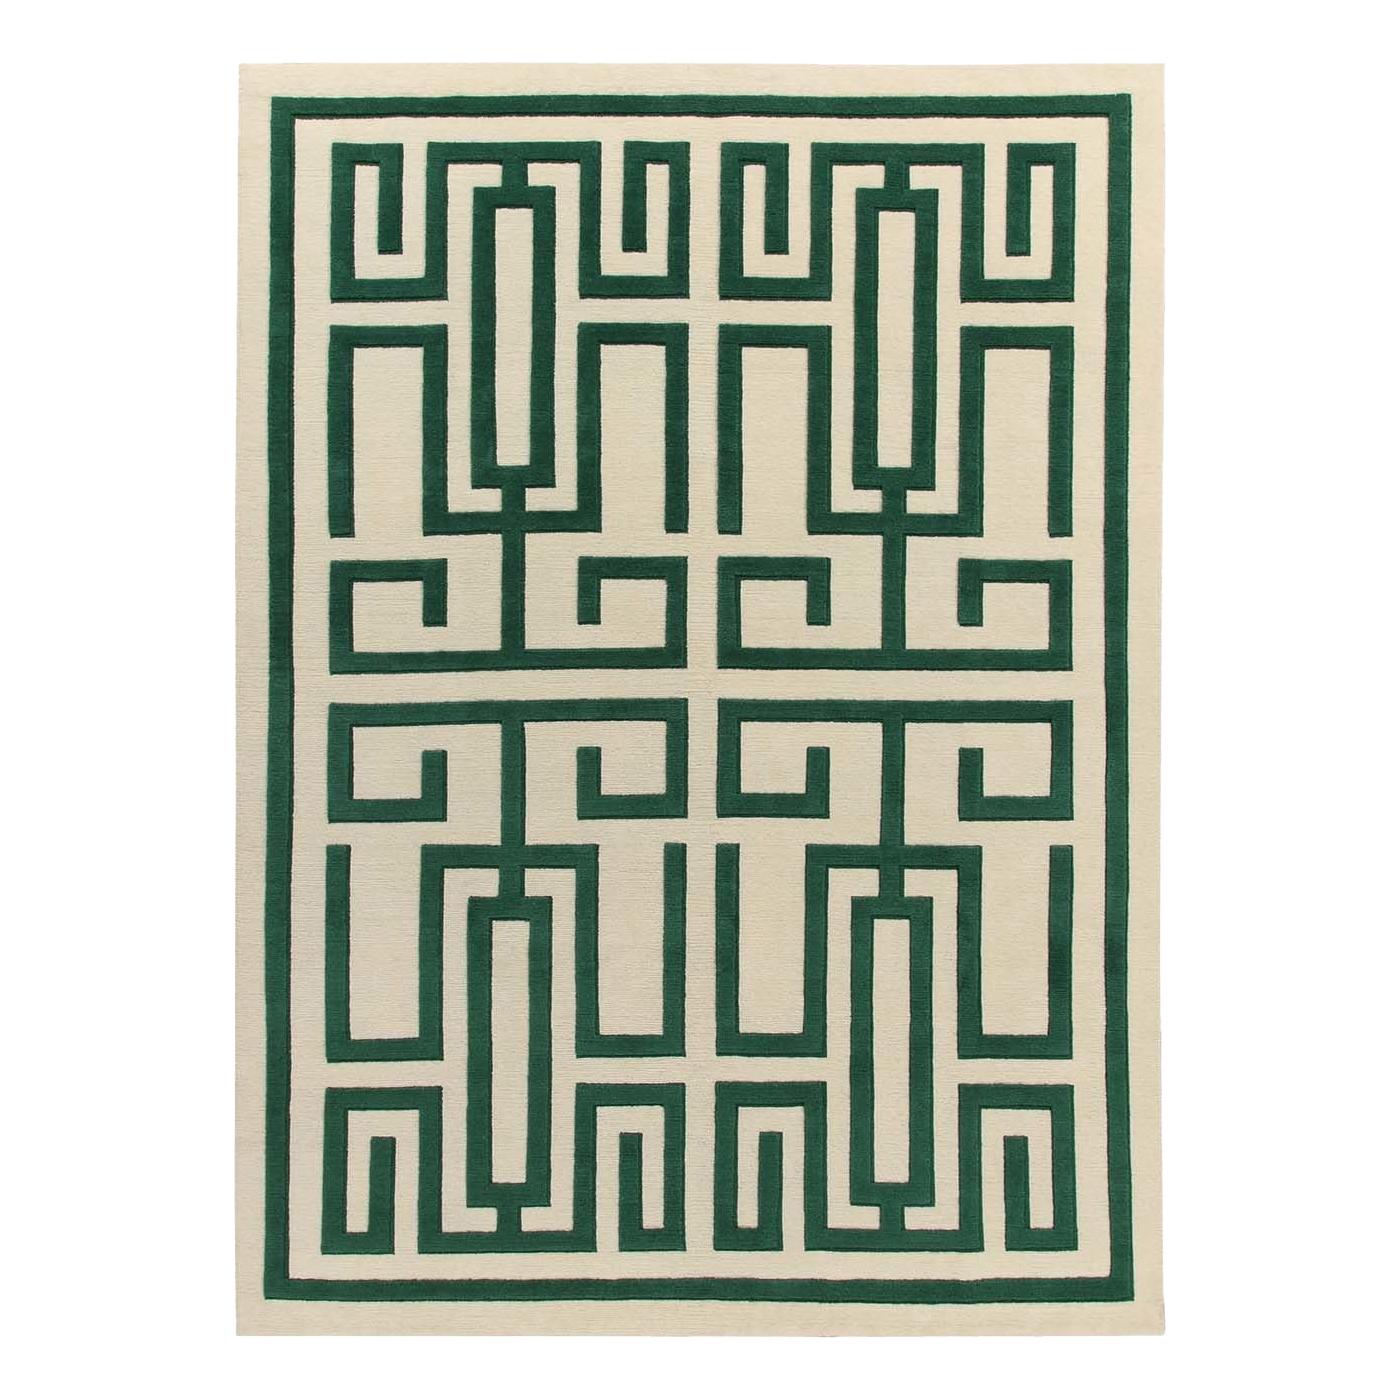 Grüner Labirinto-Teppich von Gio Ponti